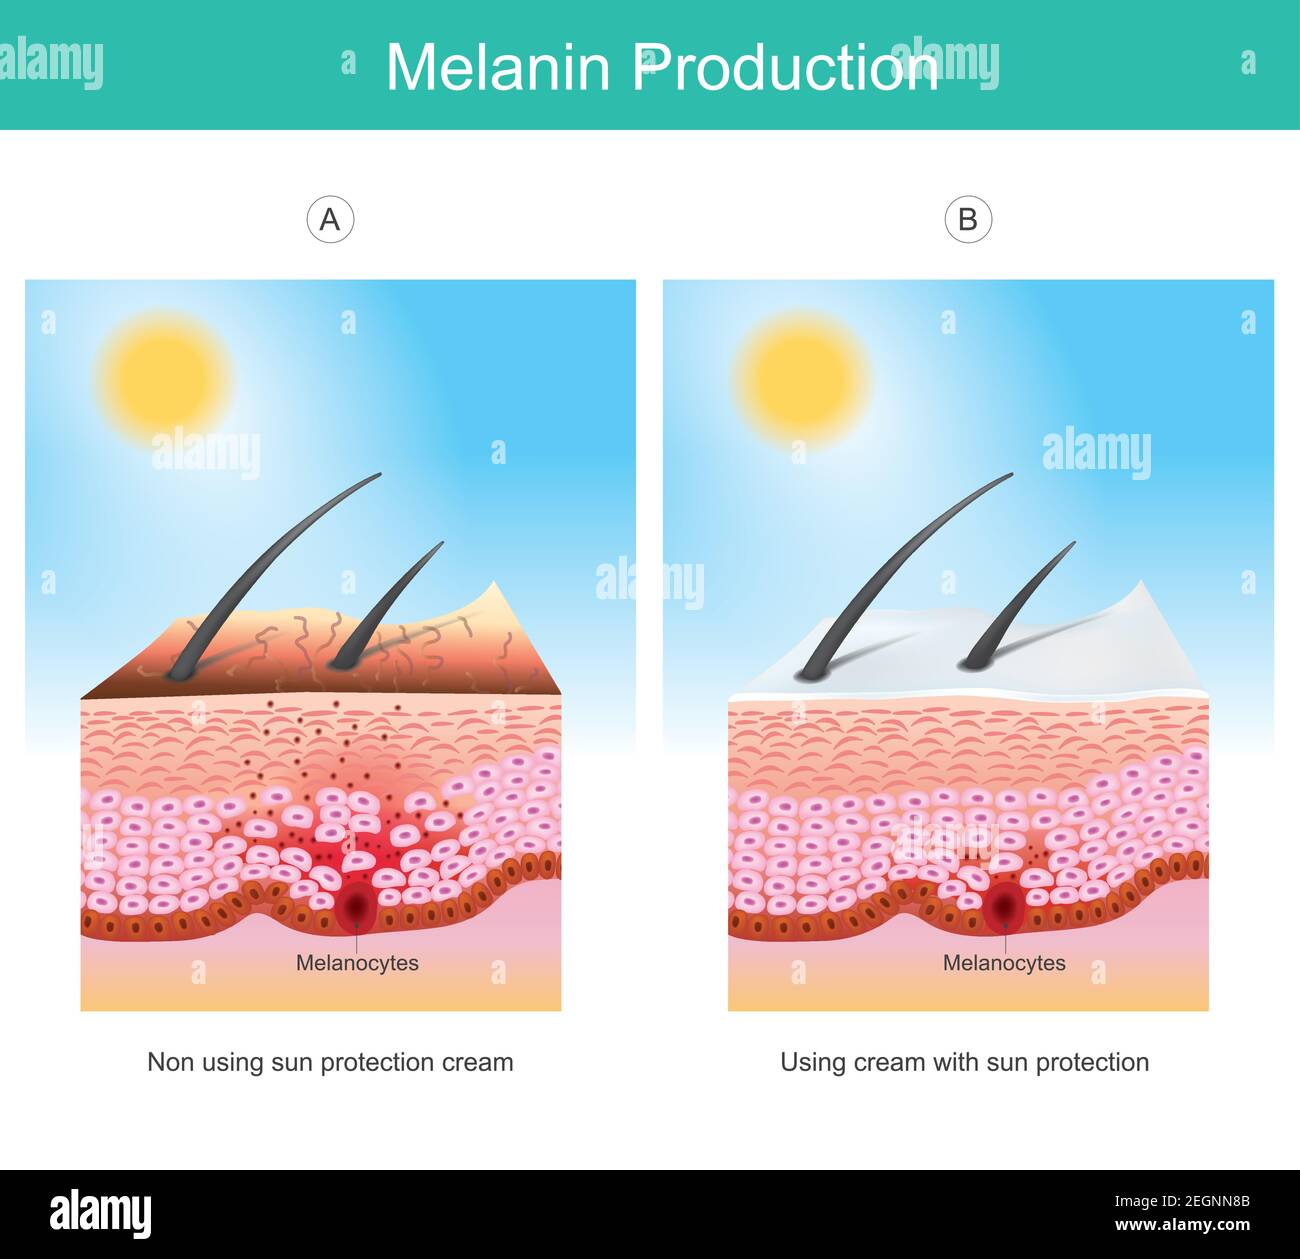 Melaninproduktion. Abbildung zeigt Farbe menschliche Haut beeinflussen von UV-Strahlen die Ursache der Stimulationen Melanozytenzelle in Hautschichten. Stock Vektor